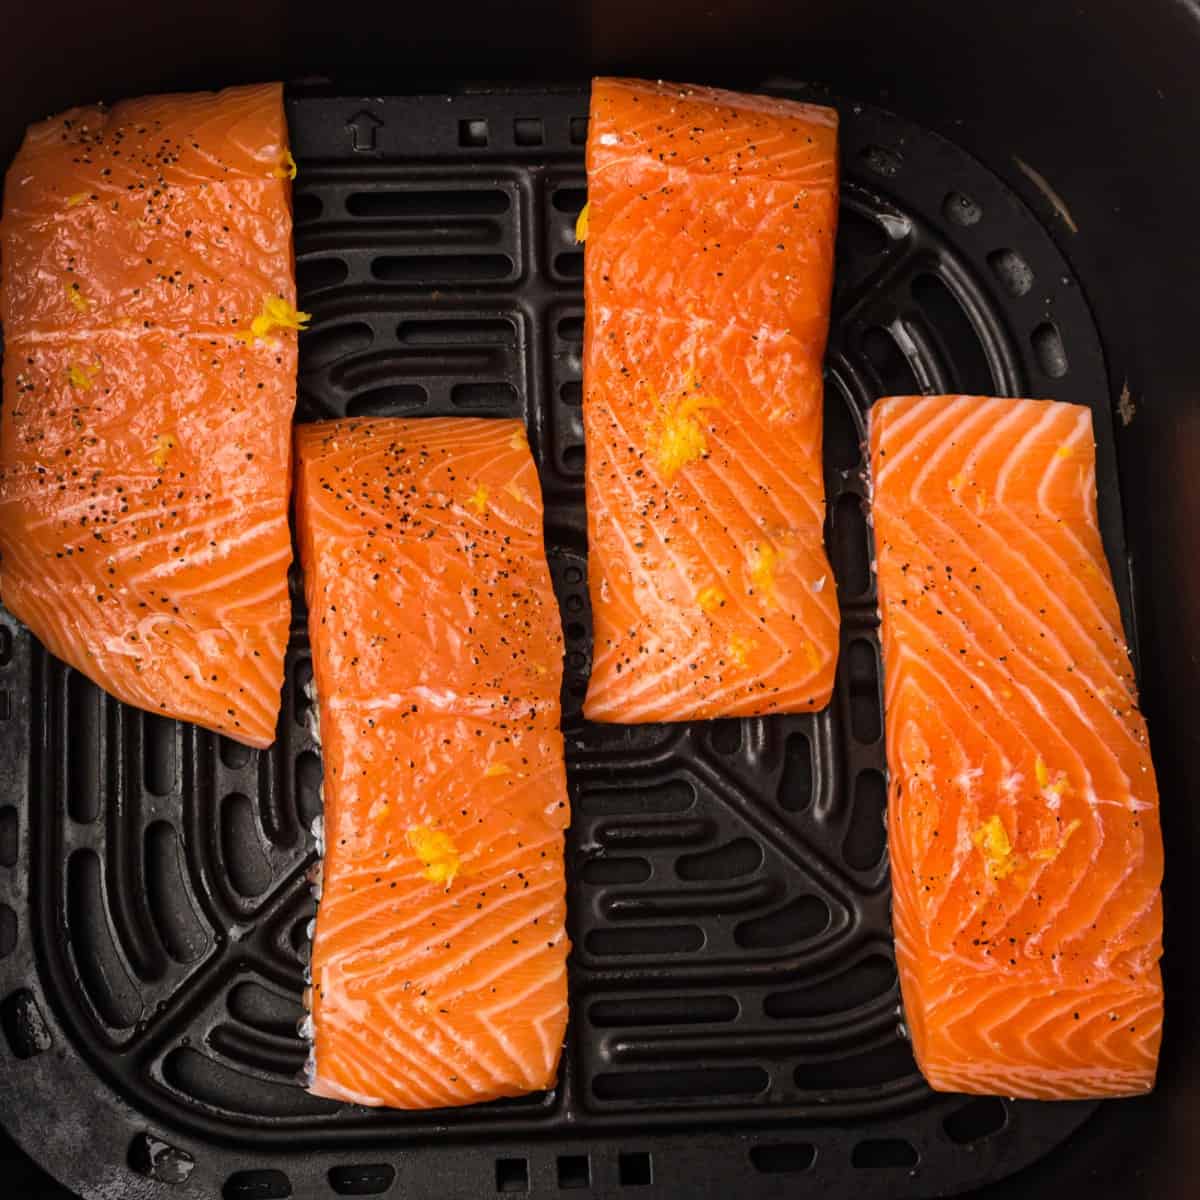 arrange salmon fillets skin side down in the air fryer